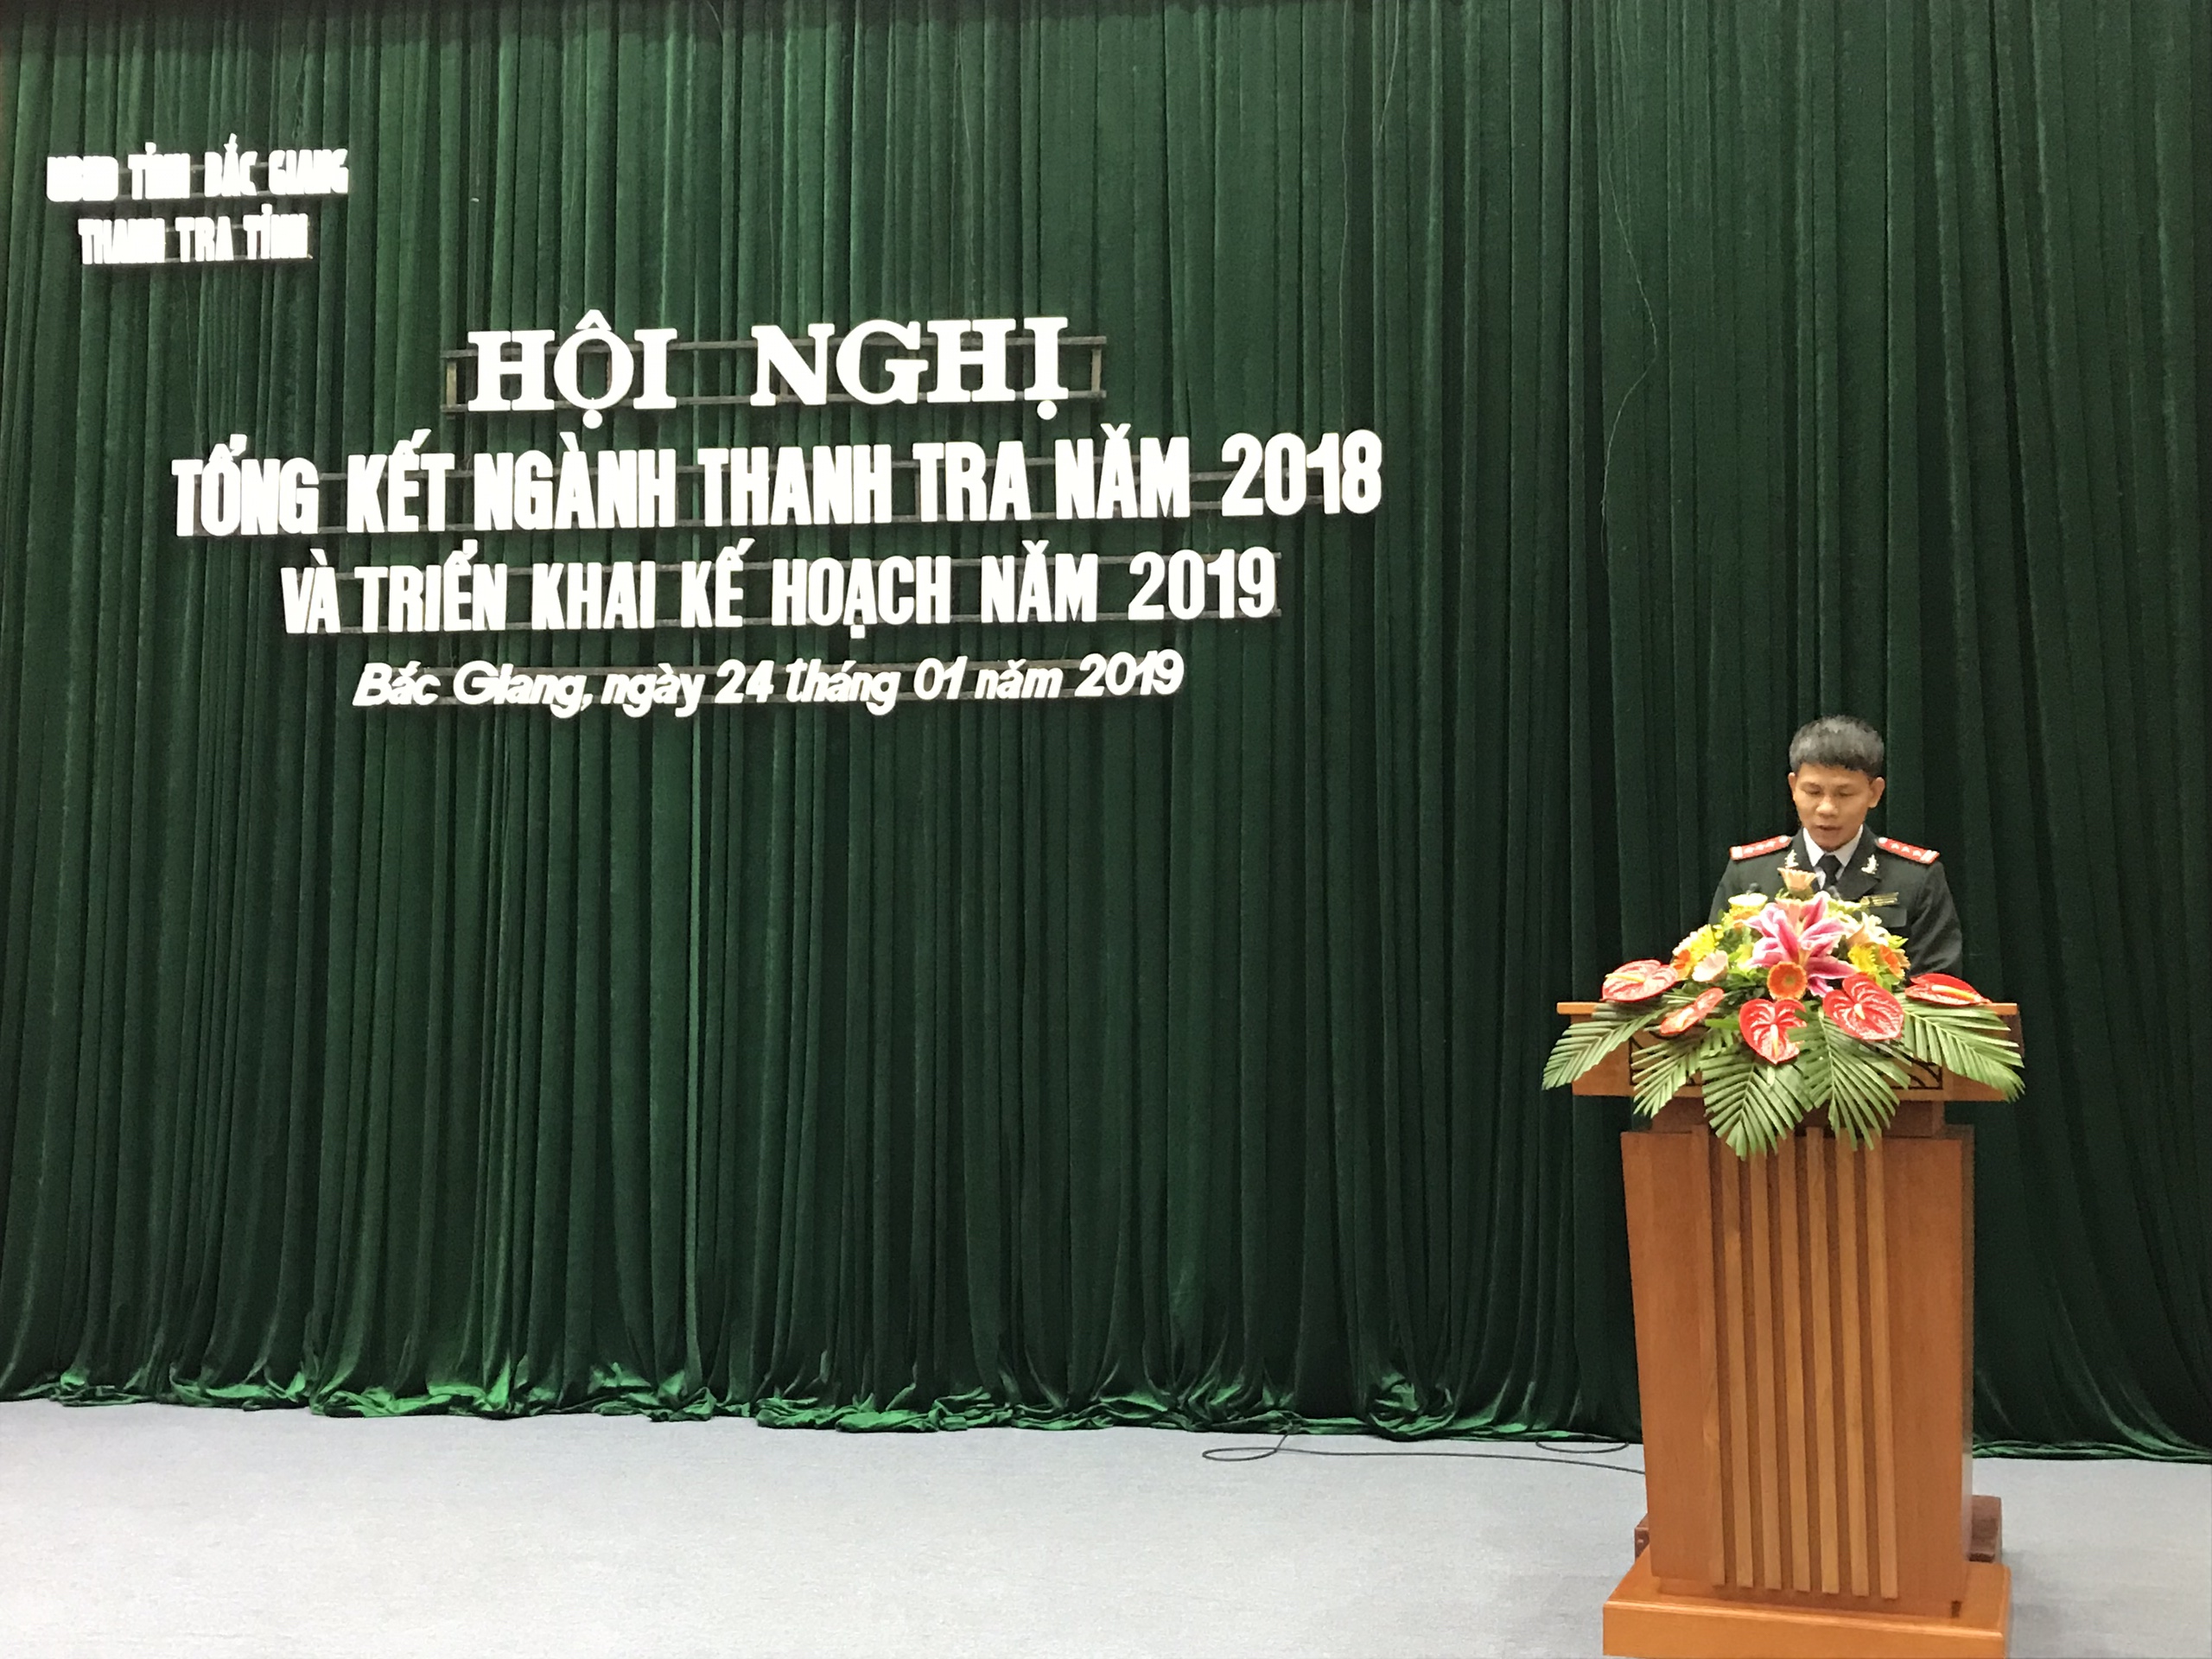 Đồng chí Nguyễn Sơn Hồng – Phó Chánh Thanh tra tỉnh, Báo cáo kết quả công tác của ngành thanh tra tỉnh Bắc Giang tại Hội nghị